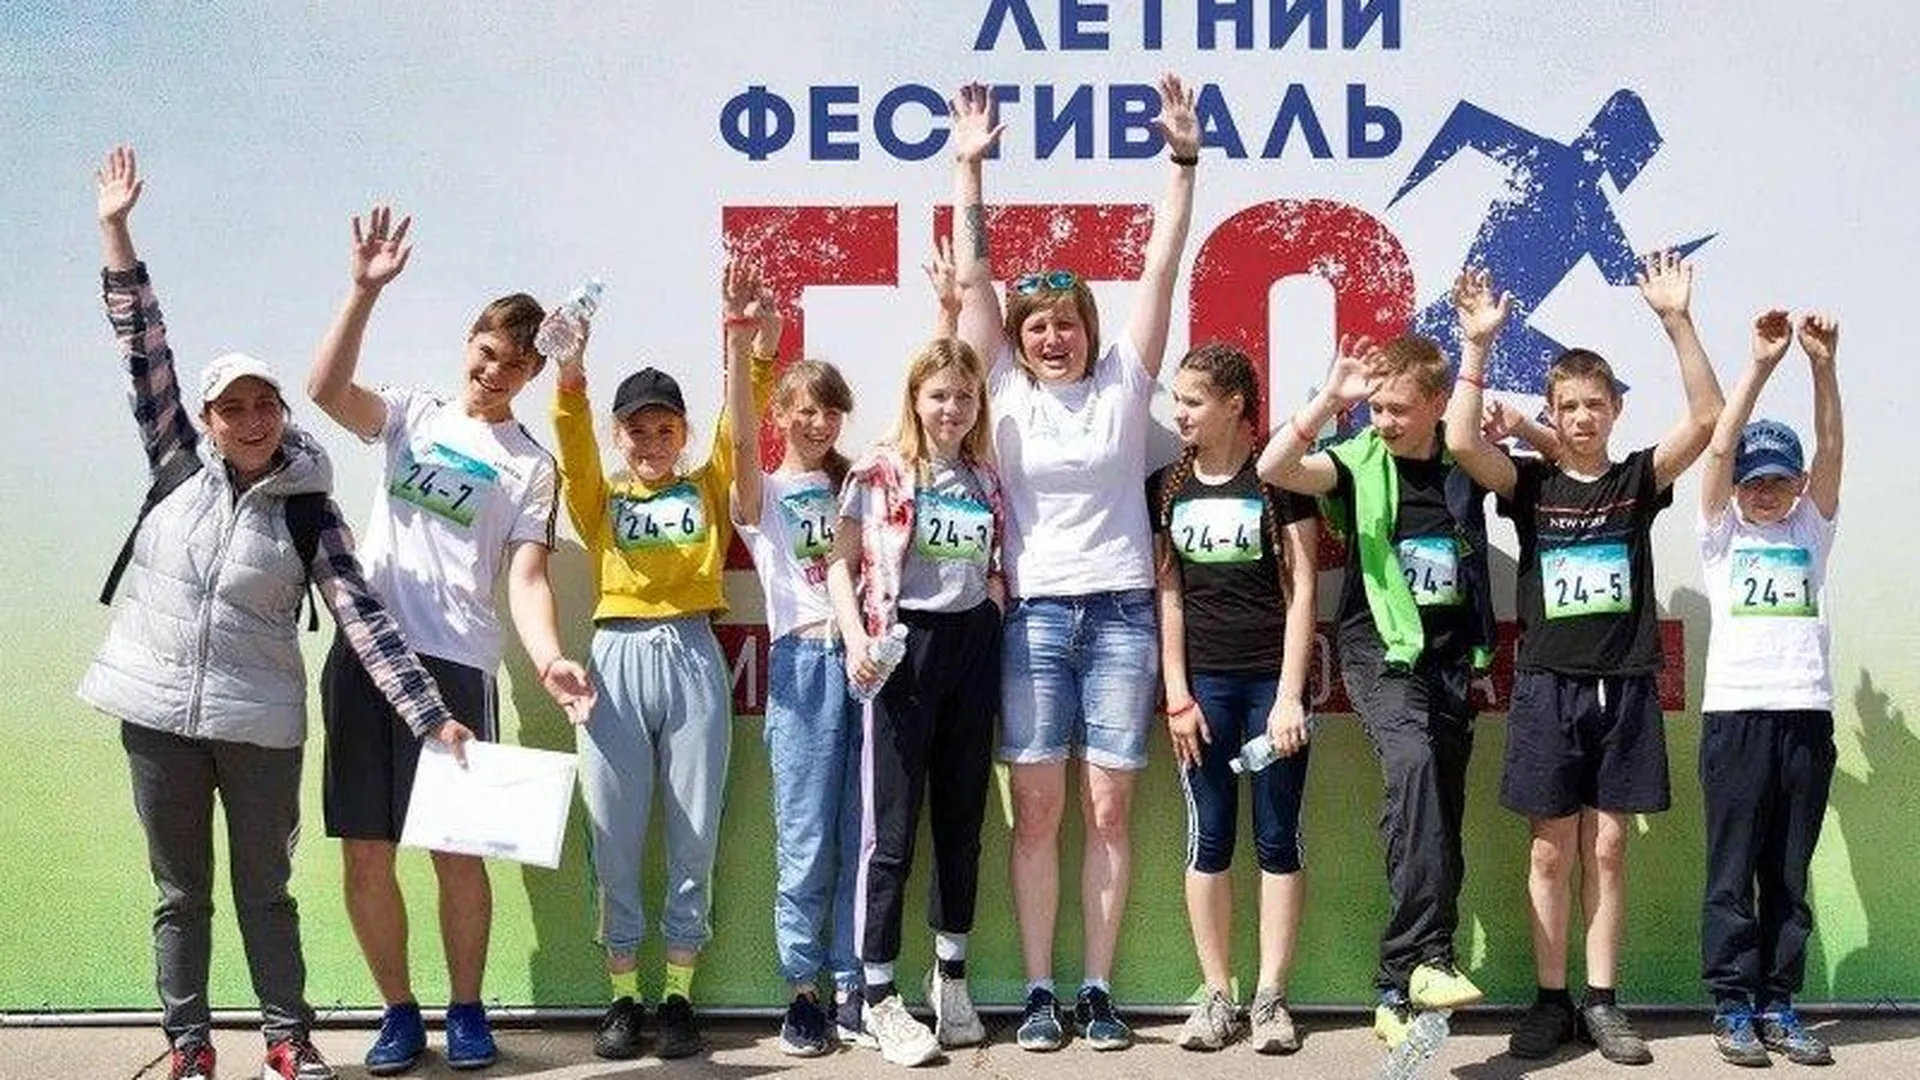 Пресс-служба Министерства физической культуры и спорта Московской области